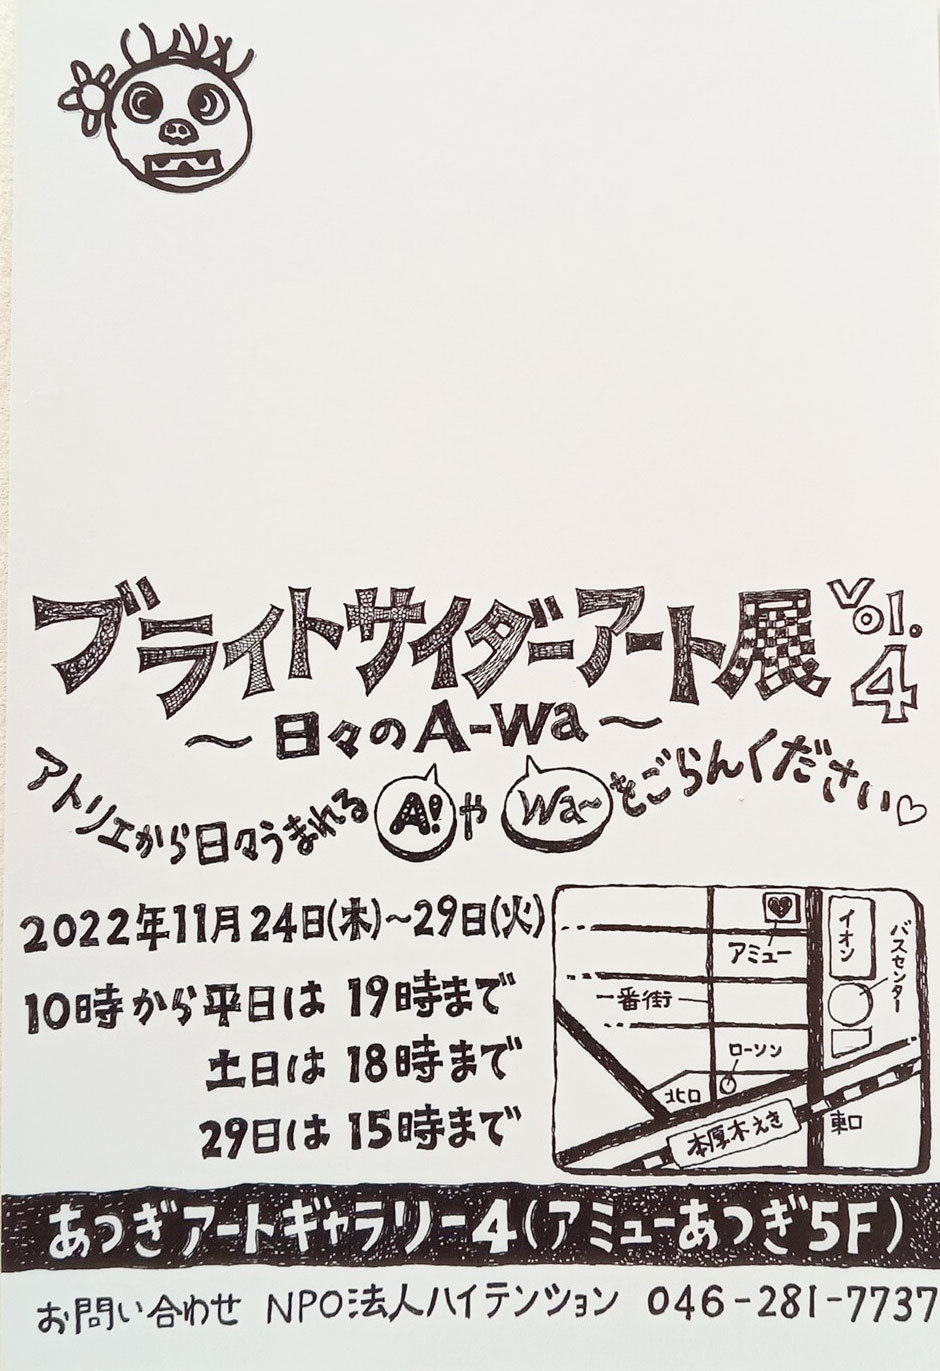 ブライトサイダーアート展〜日々のA-WA〜vol.411.24-29_e0124863_11035910.jpg